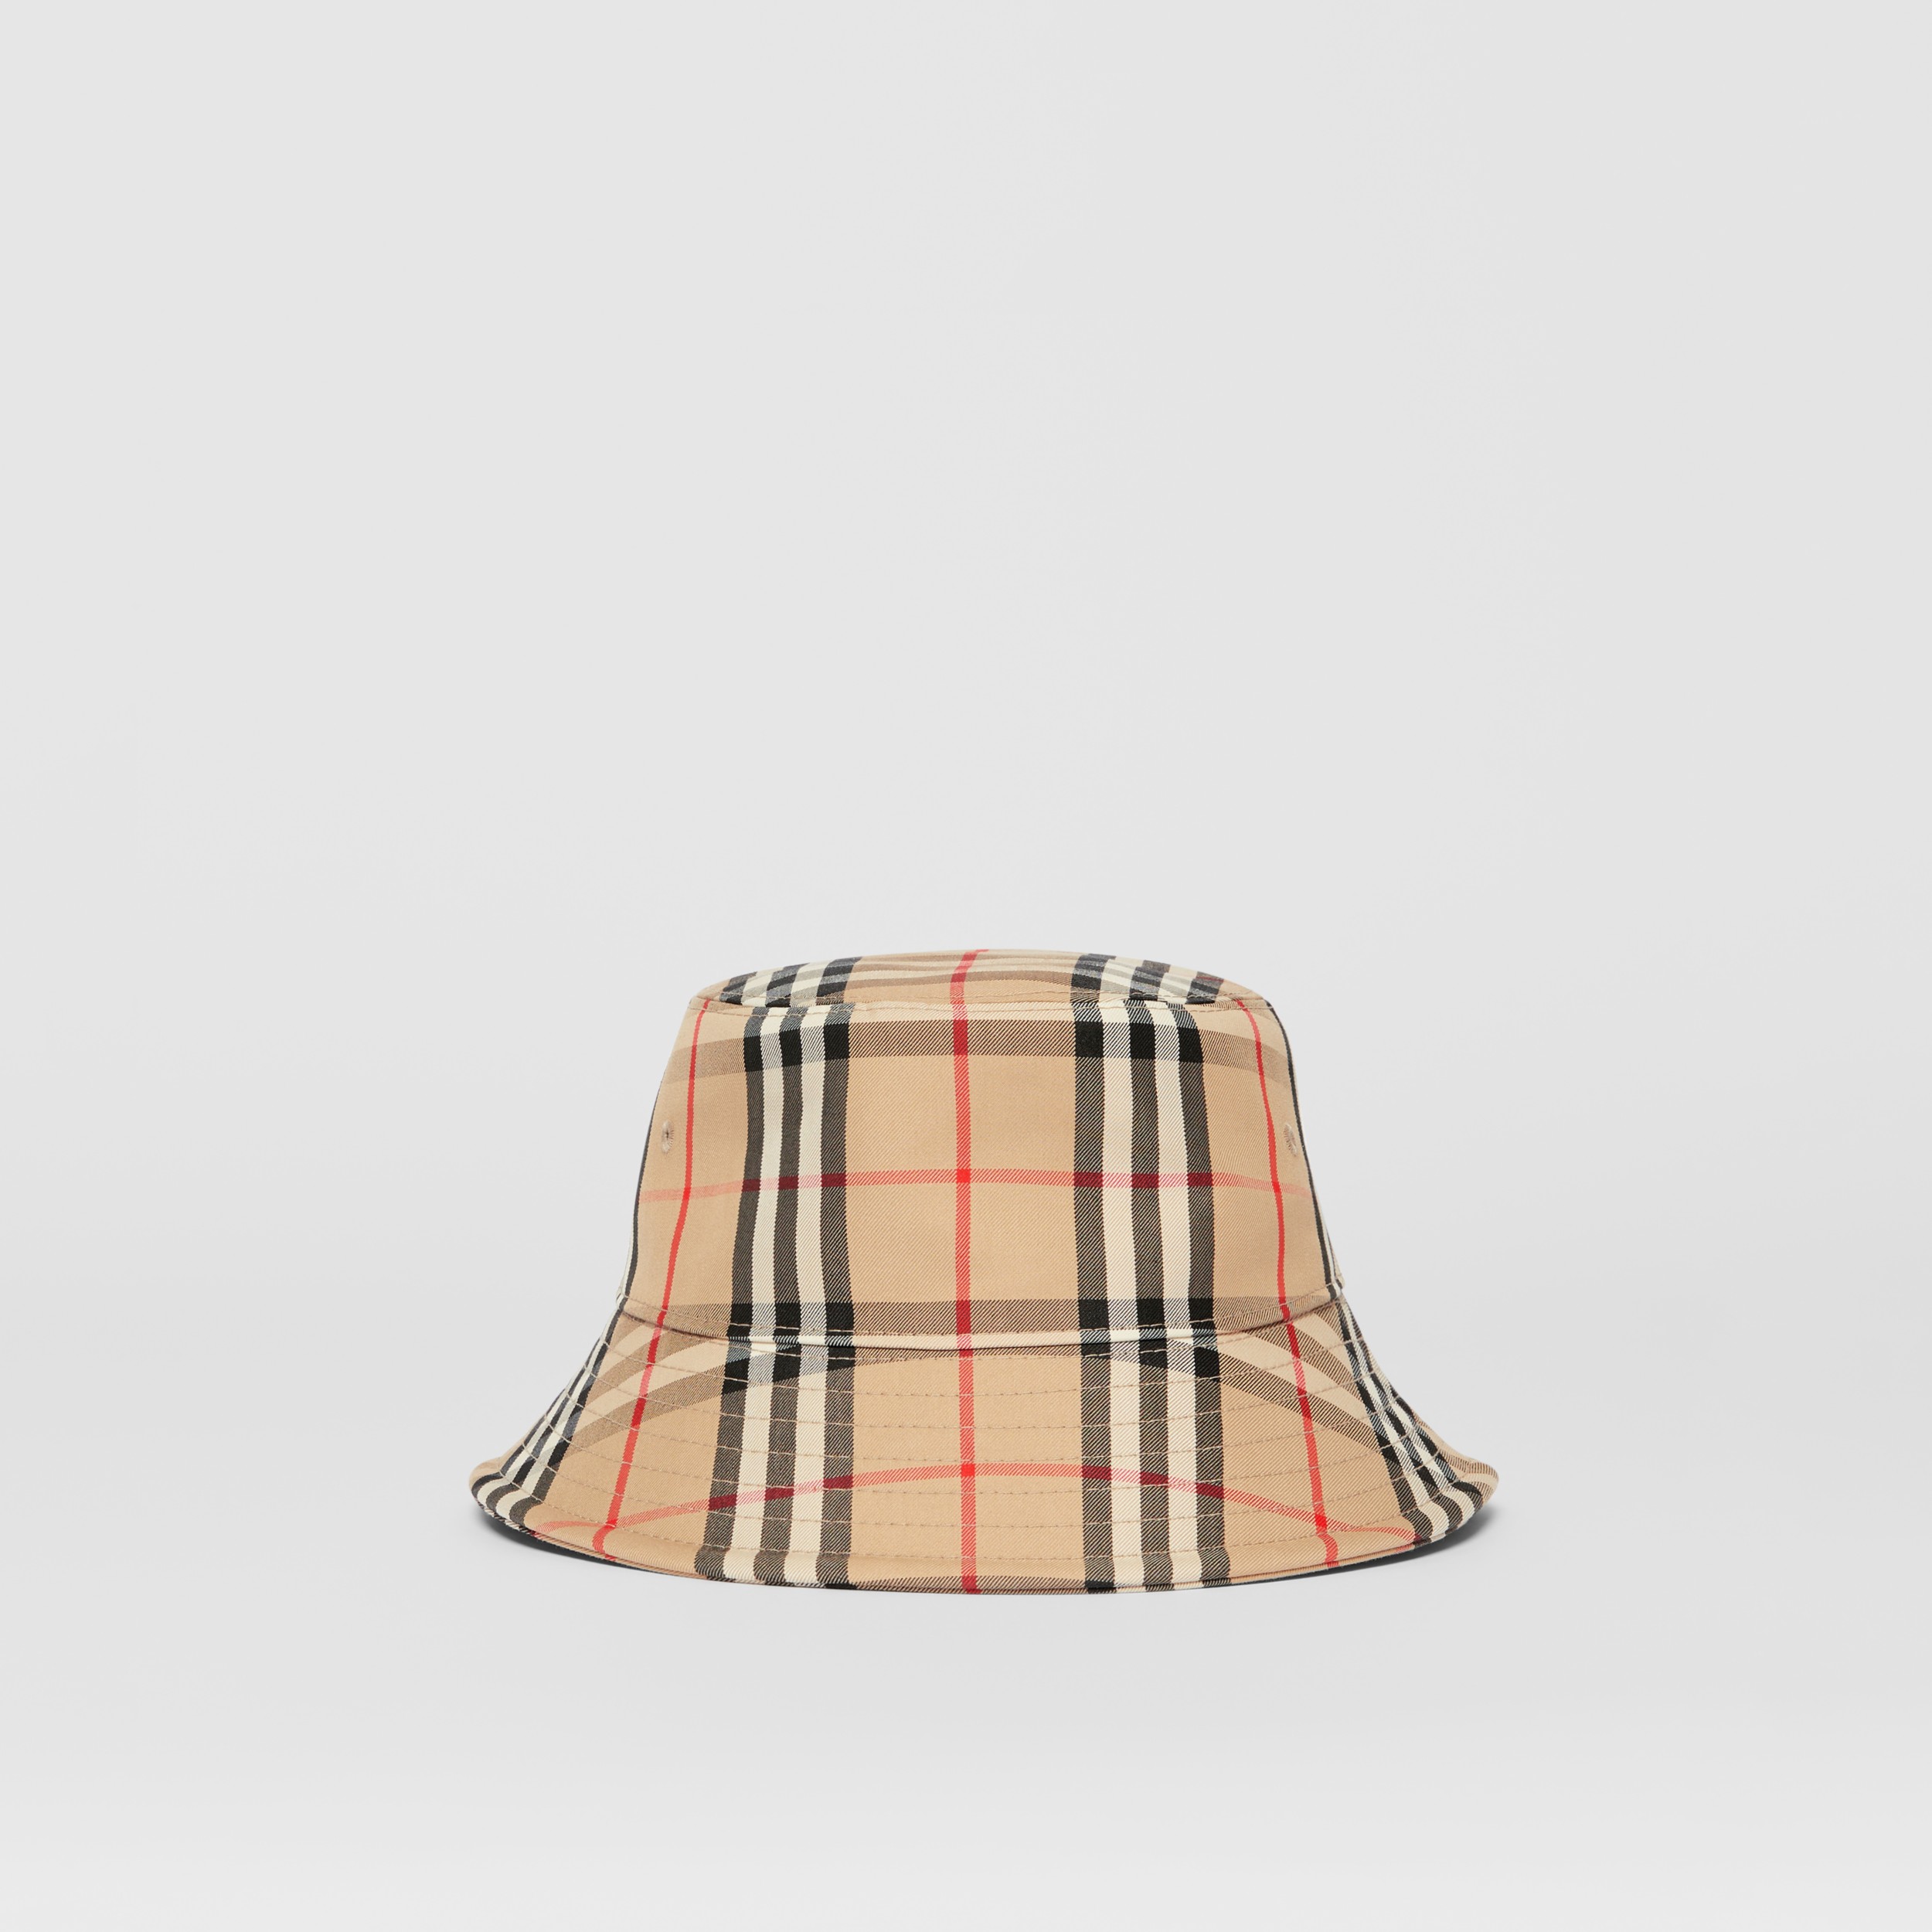 Introducir 83+ imagen burberry bucket hat price